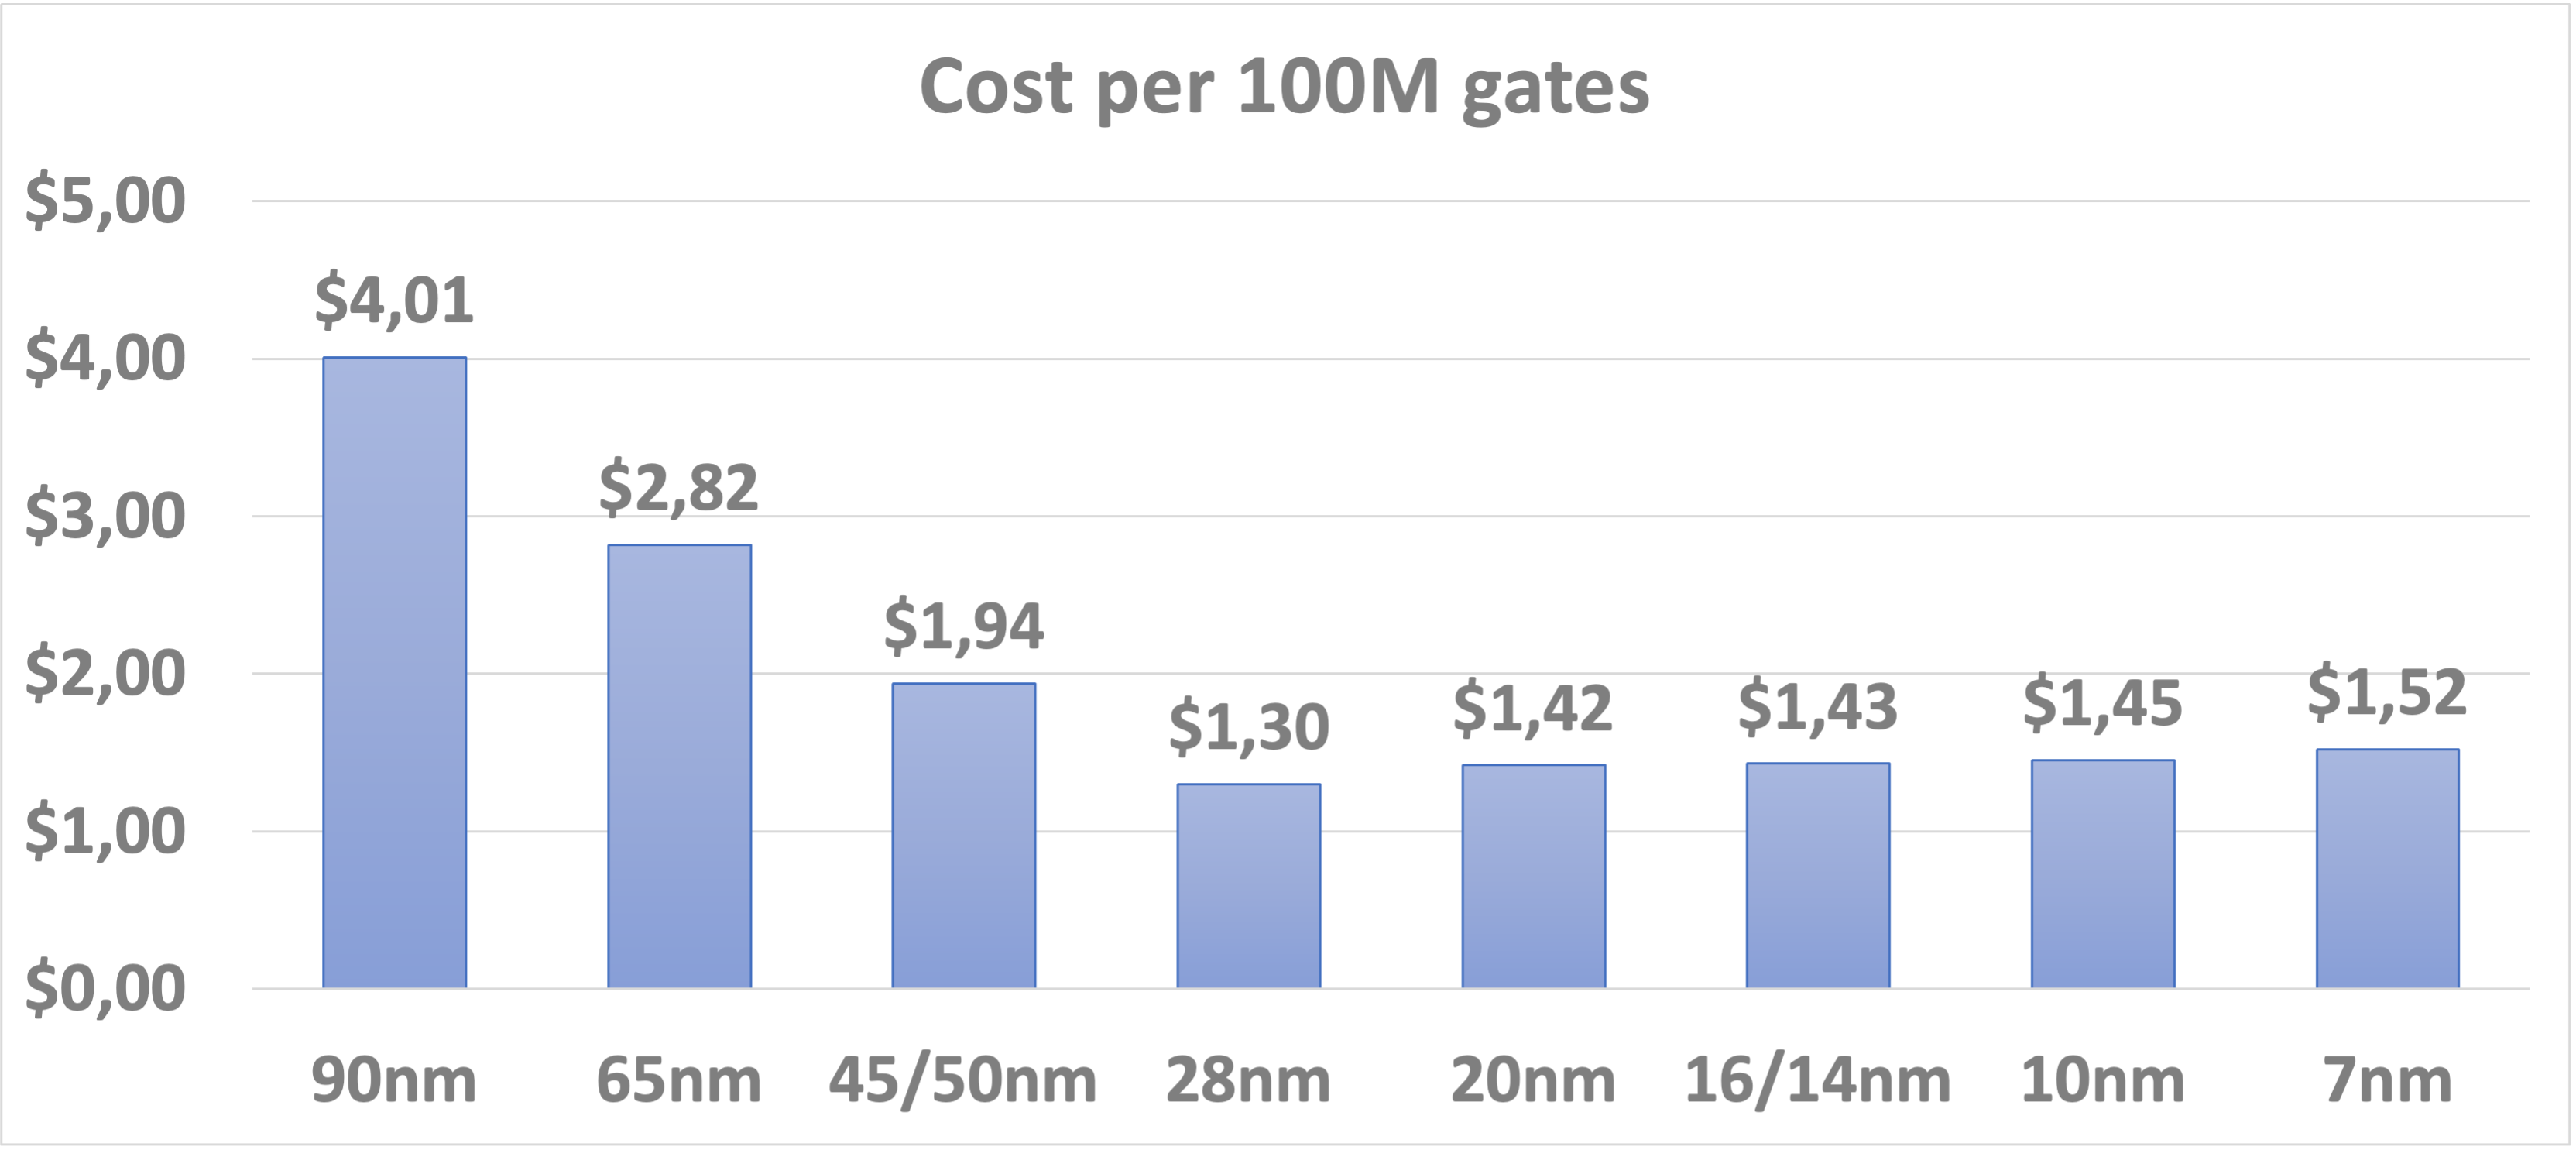 Cost per 100M gates